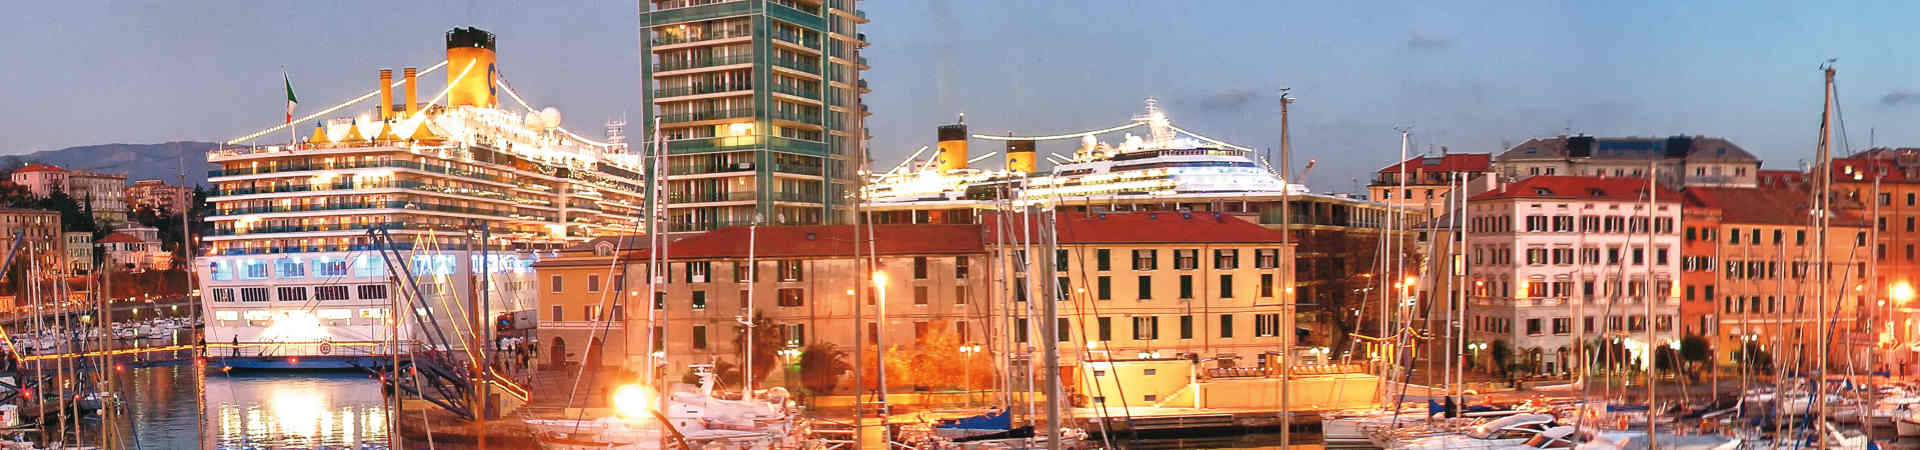 Imagen recurso del puerto de destino Savona para la ruta en ferry Bastia - Savona